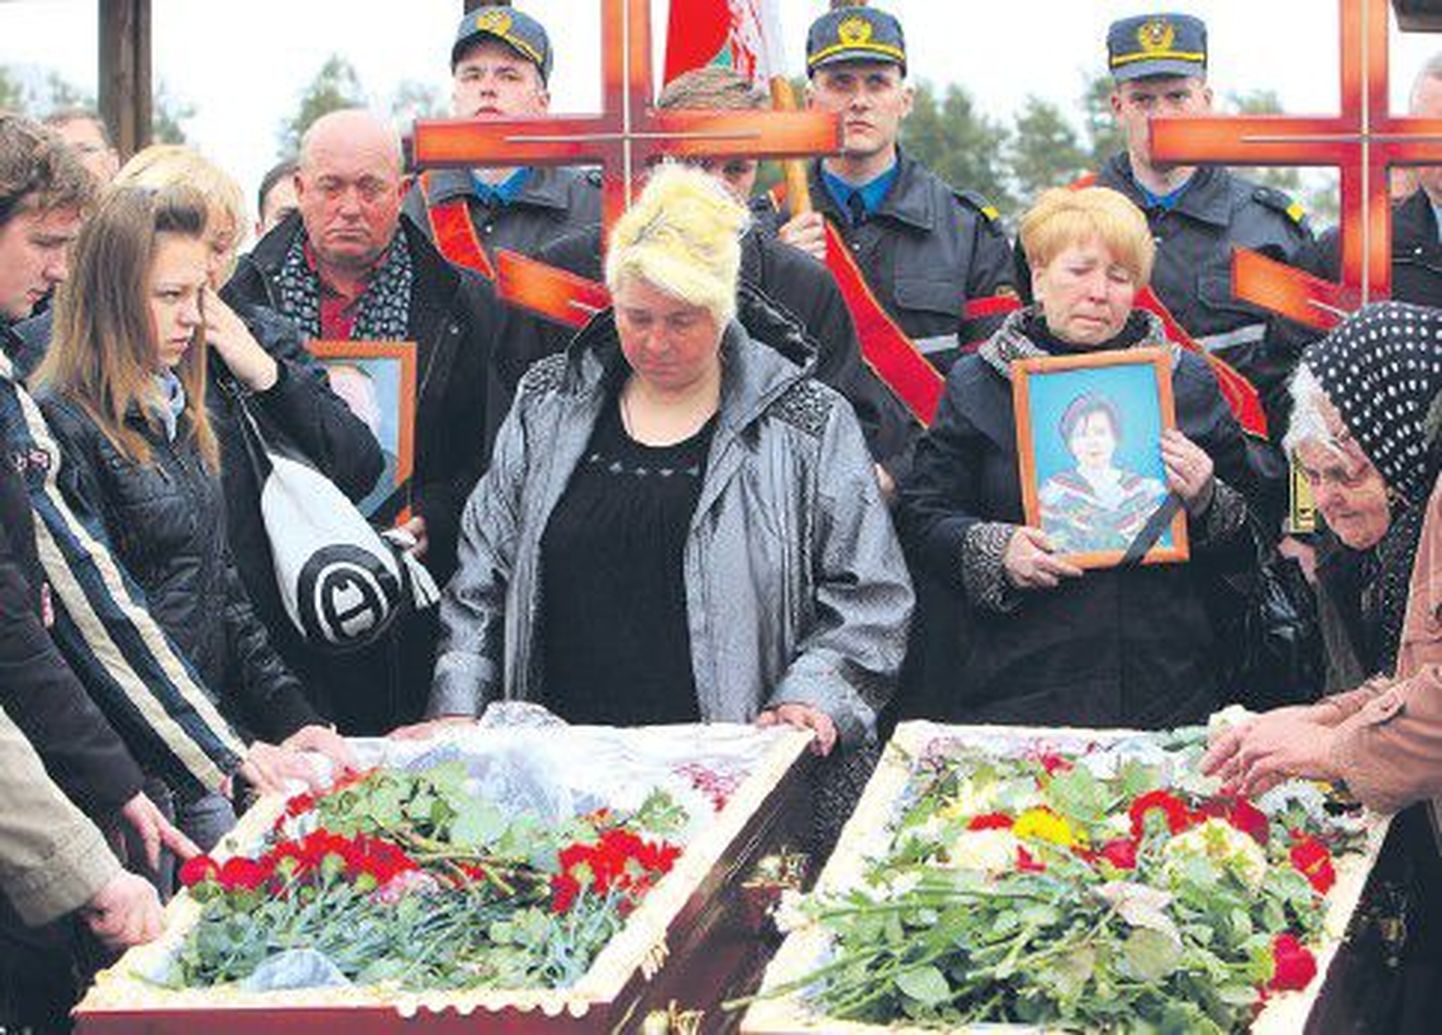 Вчера родные и близкие простились с Галиной Пикулик и Анатолием Наркевичем, состоявшими в гражданском браке и погибшими при взрыве в метрополитене Минска 11 апреля.